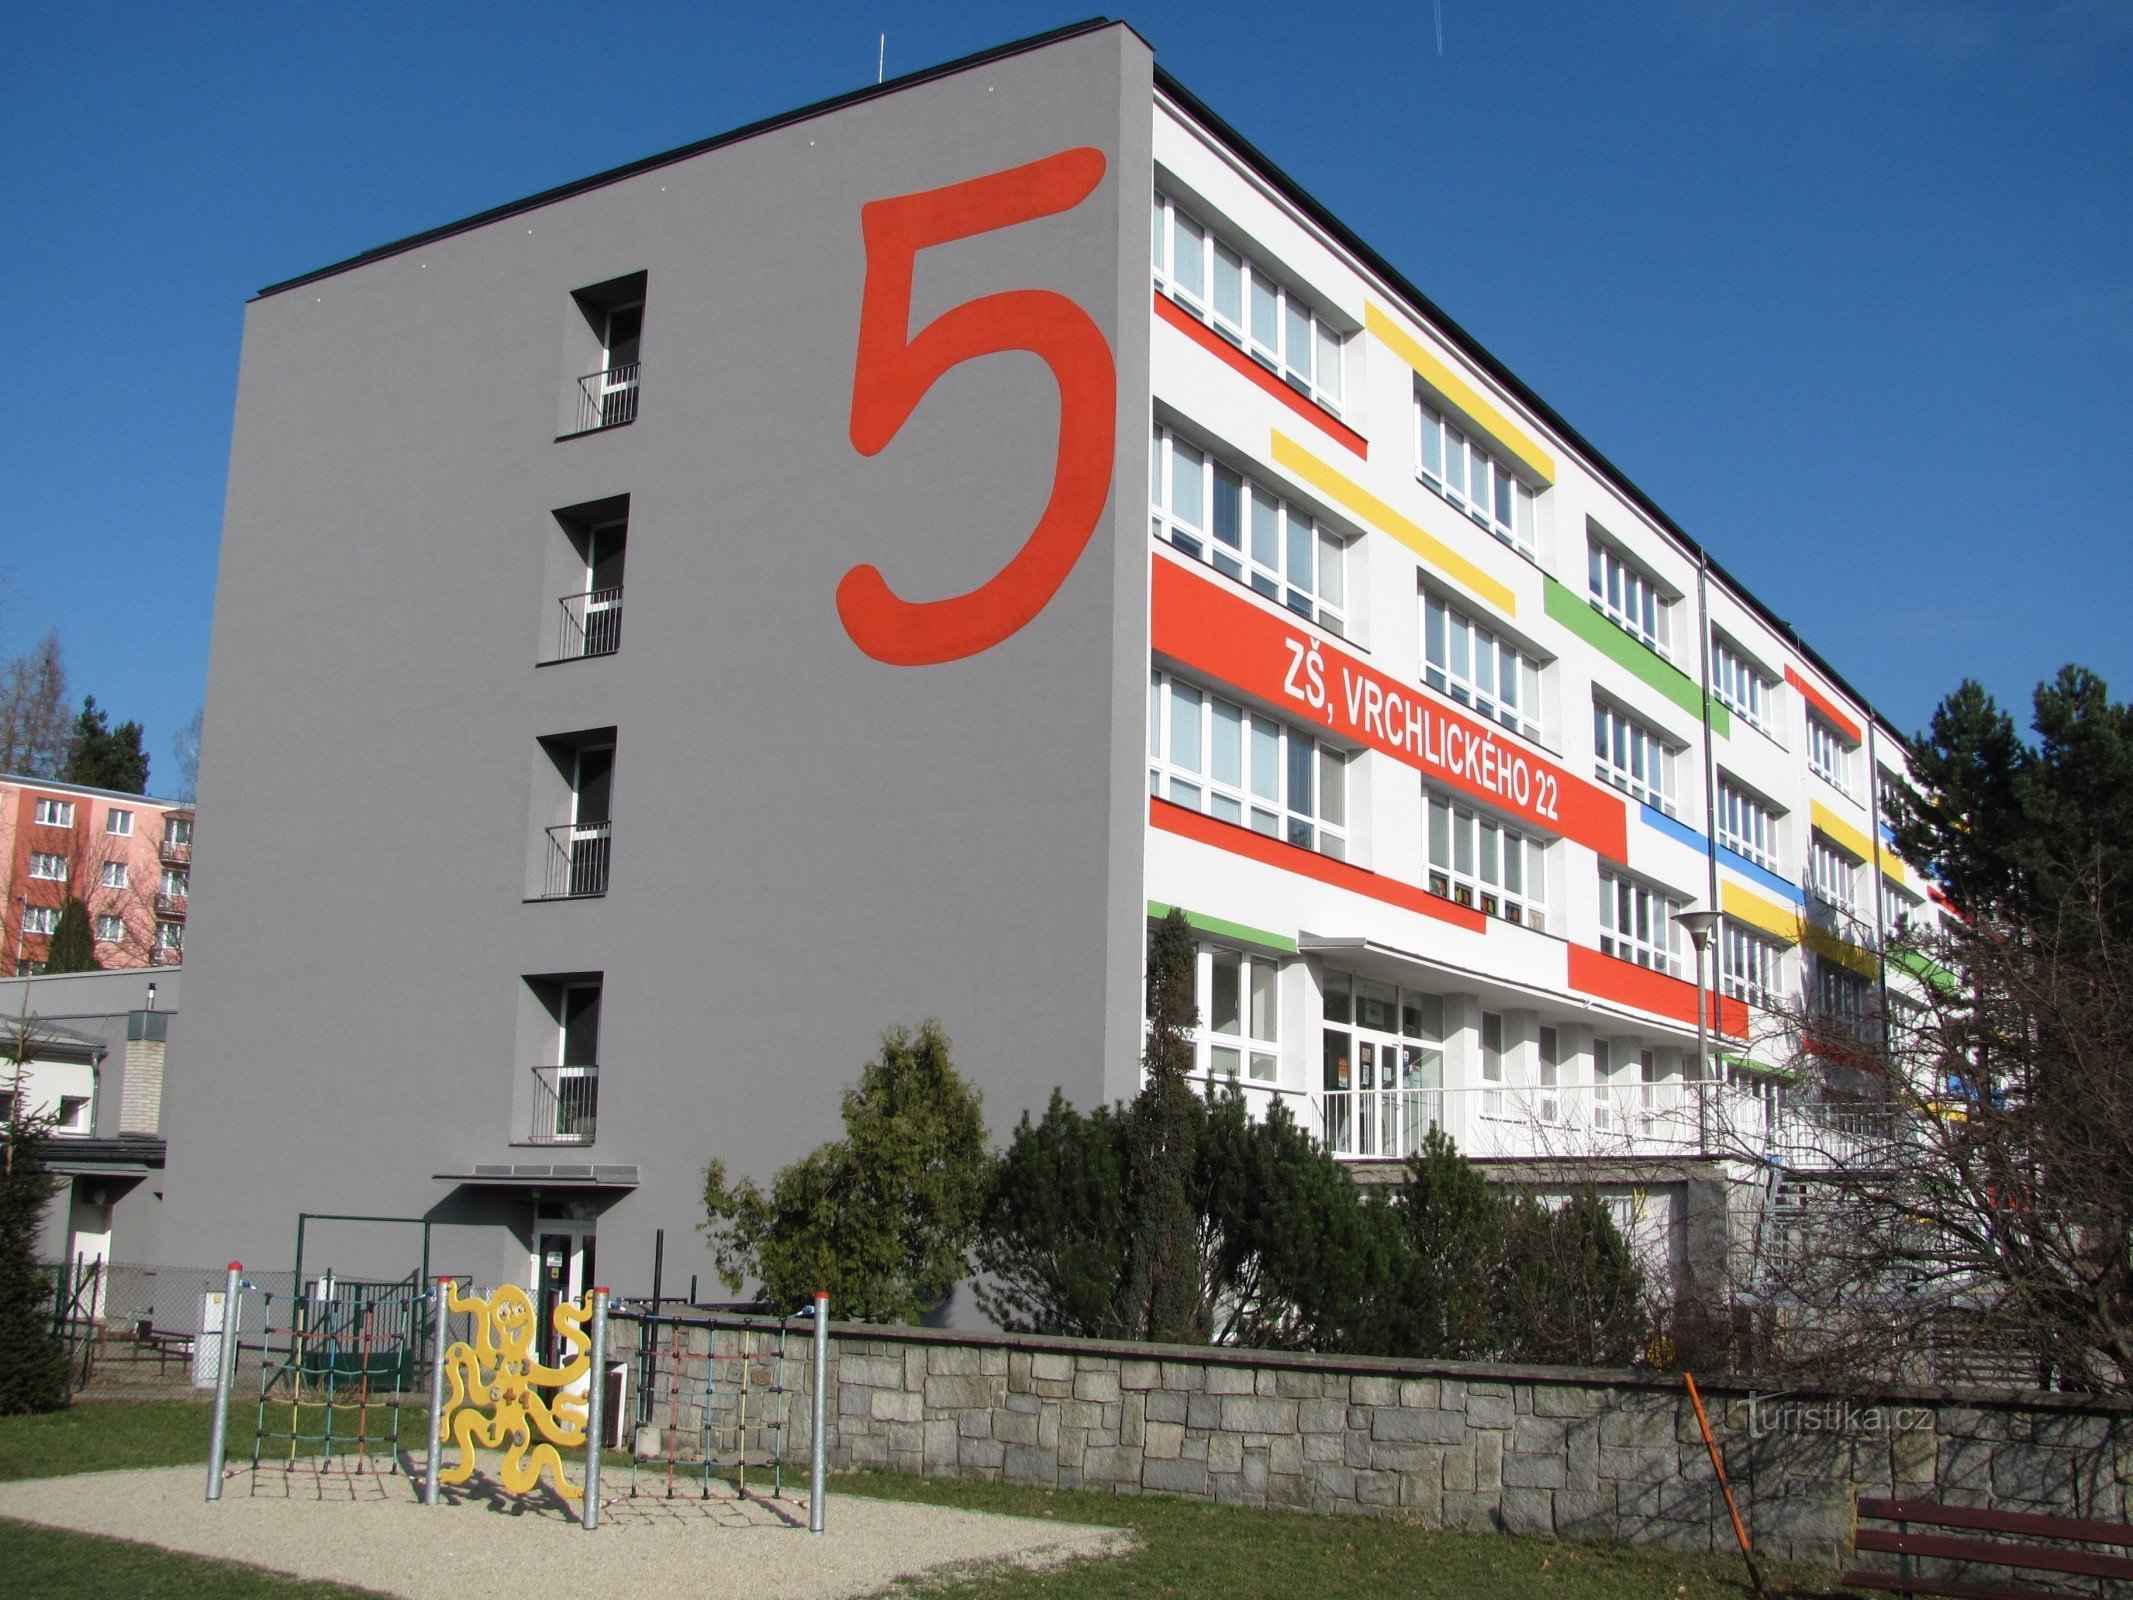 Šumperk – clădirea școlii a 5-a elementară și loc de joacă 8D pentru copii